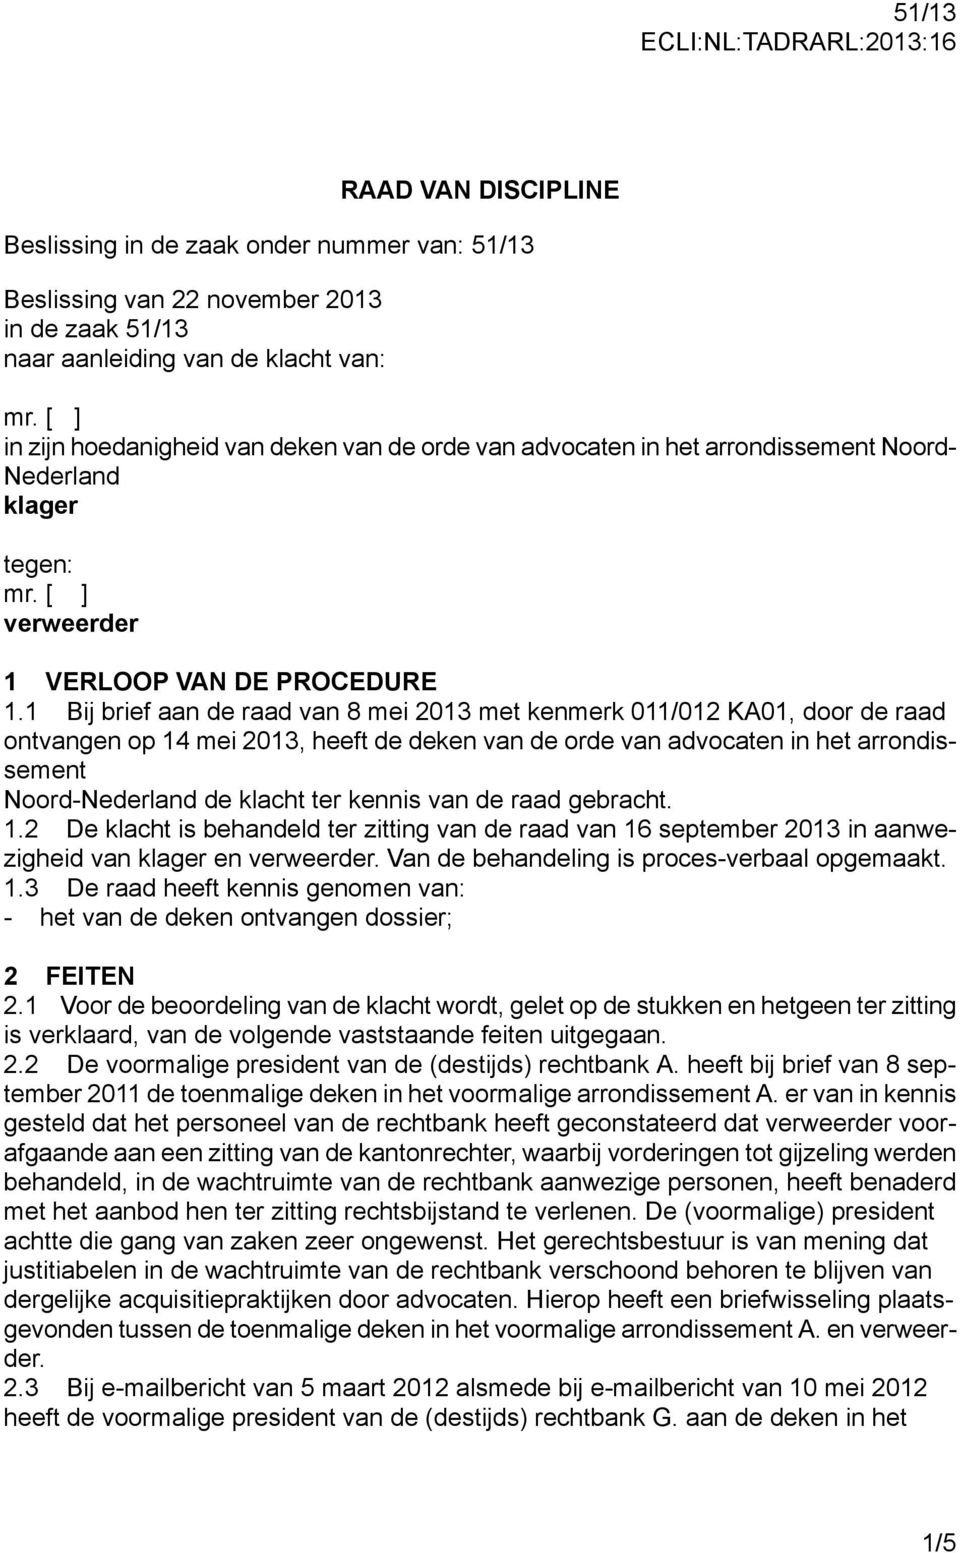 1 Bij brief aan de raad van 8 mei 2013 met kenmerk 011/012 KA01, door de raad ontvangen op 14 mei 2013, heeft de deken van de orde van advocaten in het arrondissement Noord-Nederland de klacht ter